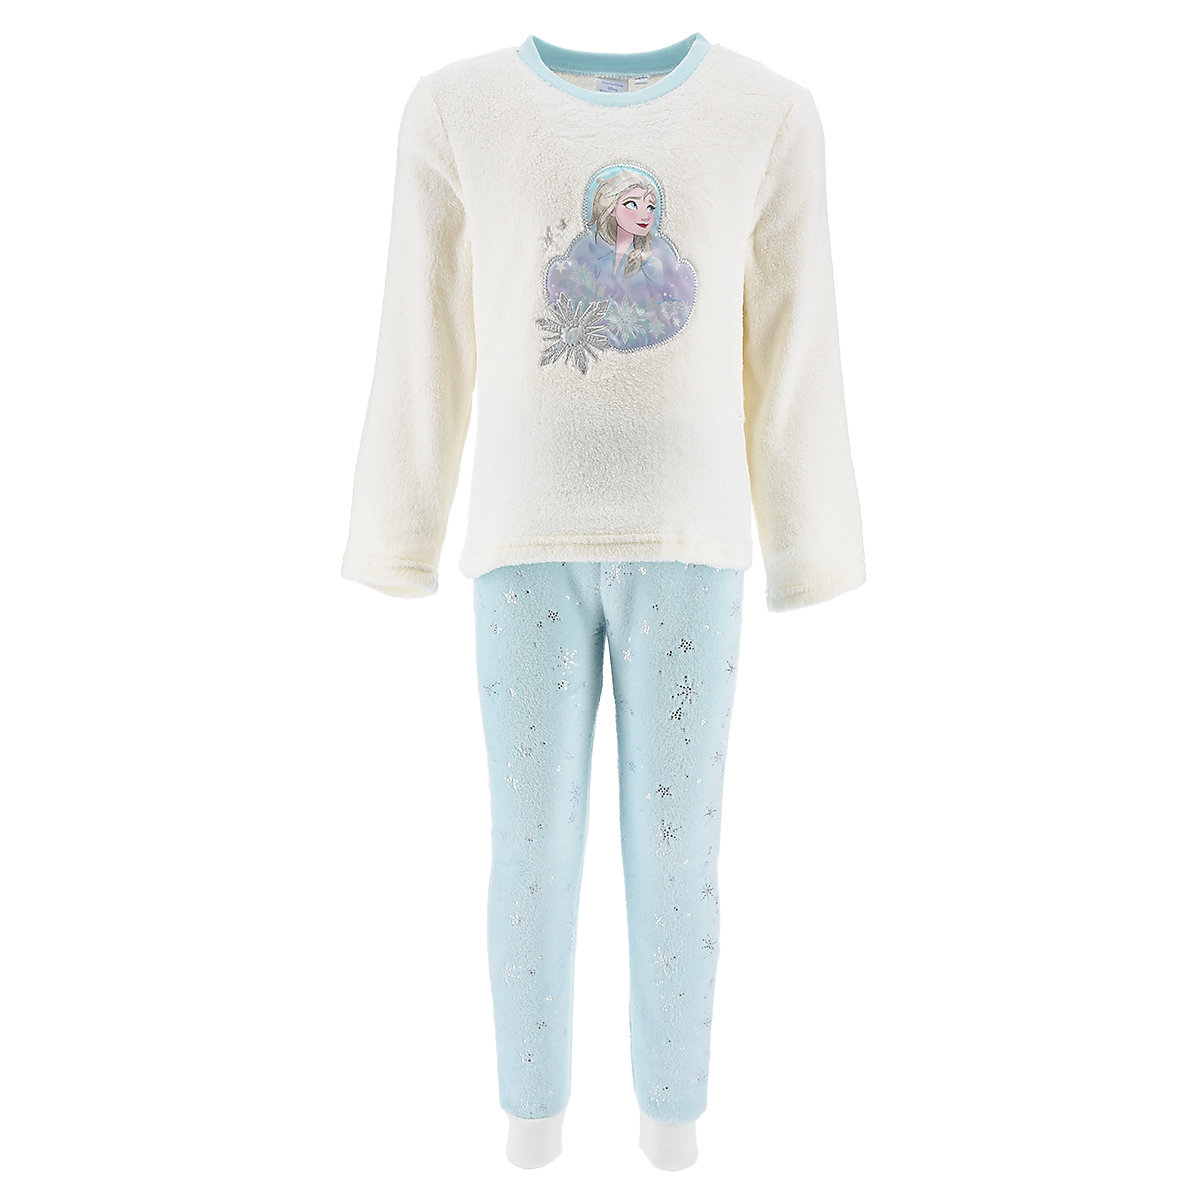 Disney Die Eiskönigin Frozen Die Eiskönigin Elsa Schlafanzug Pyjama Langarm Shirt + Schlaf-Hose weiß